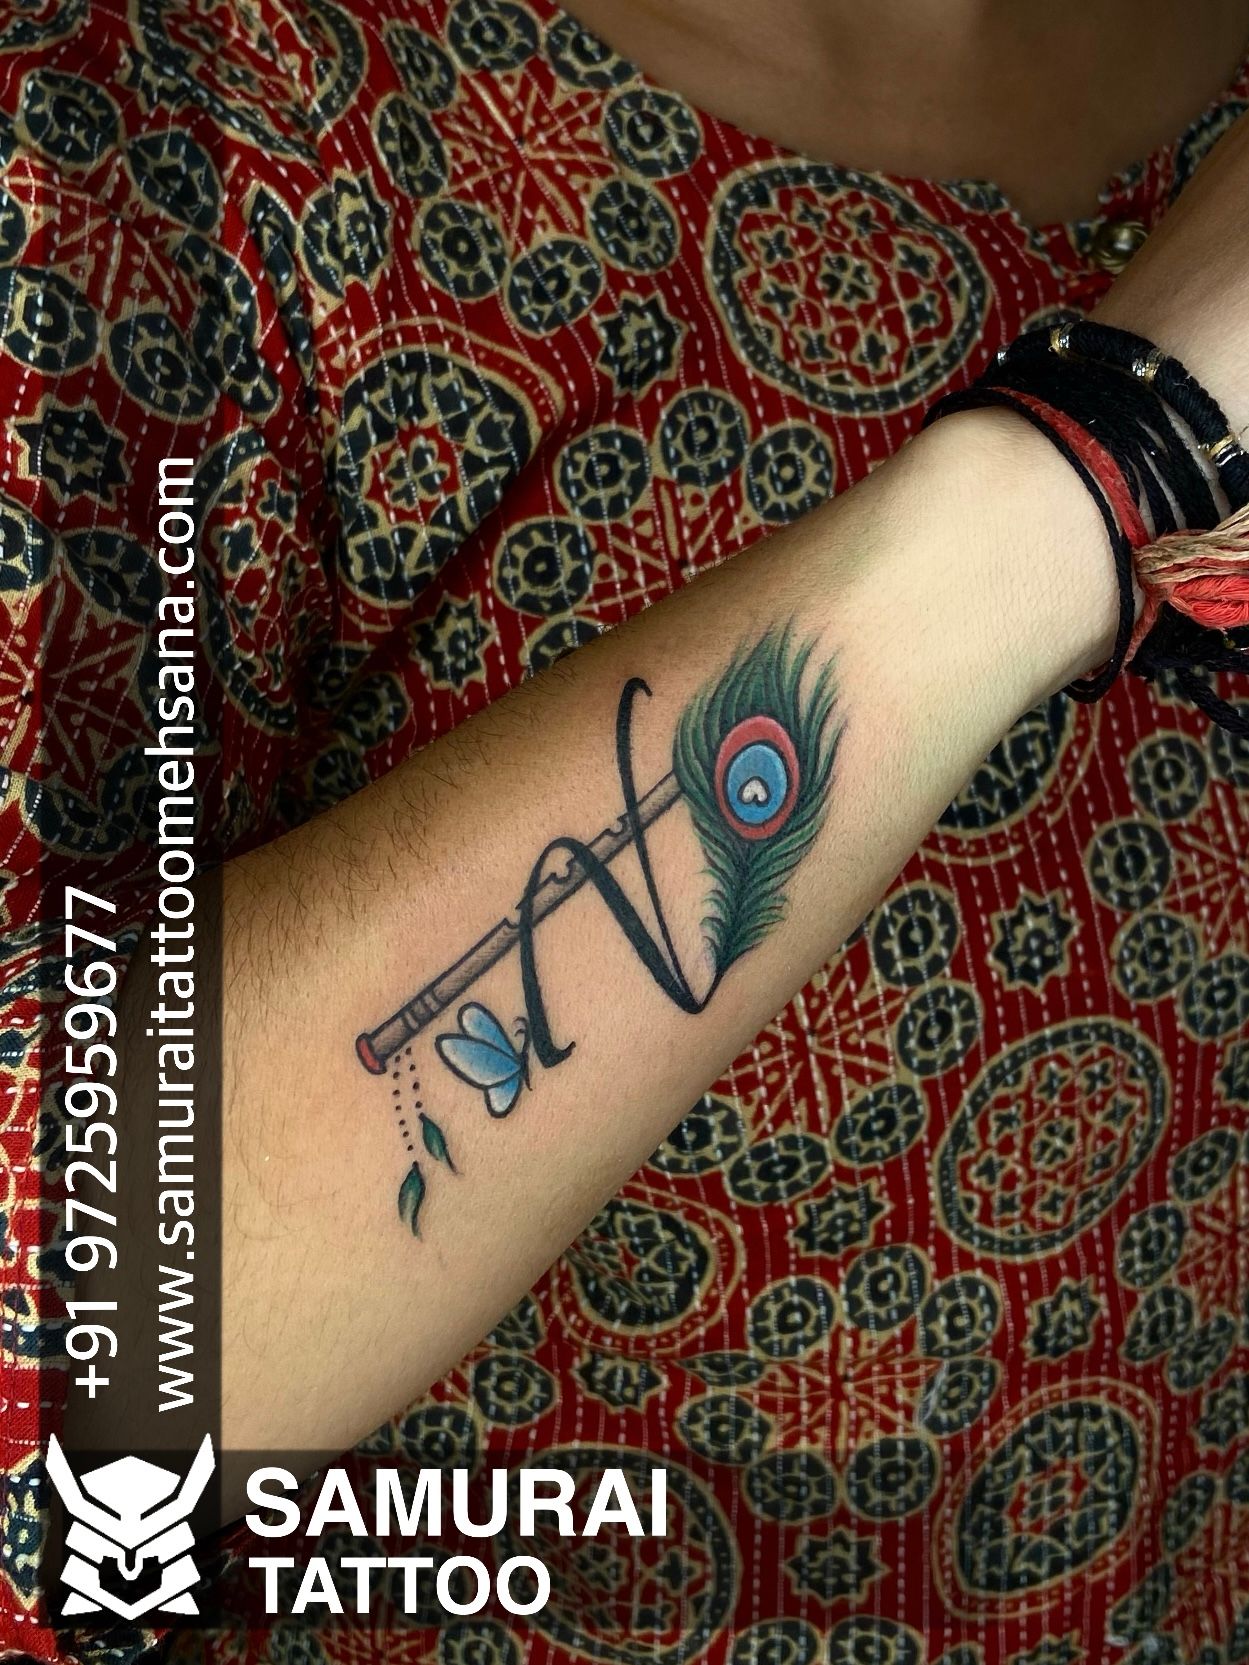 Flying V guitar tattoo by AntoniettaArnoneArts on DeviantArt